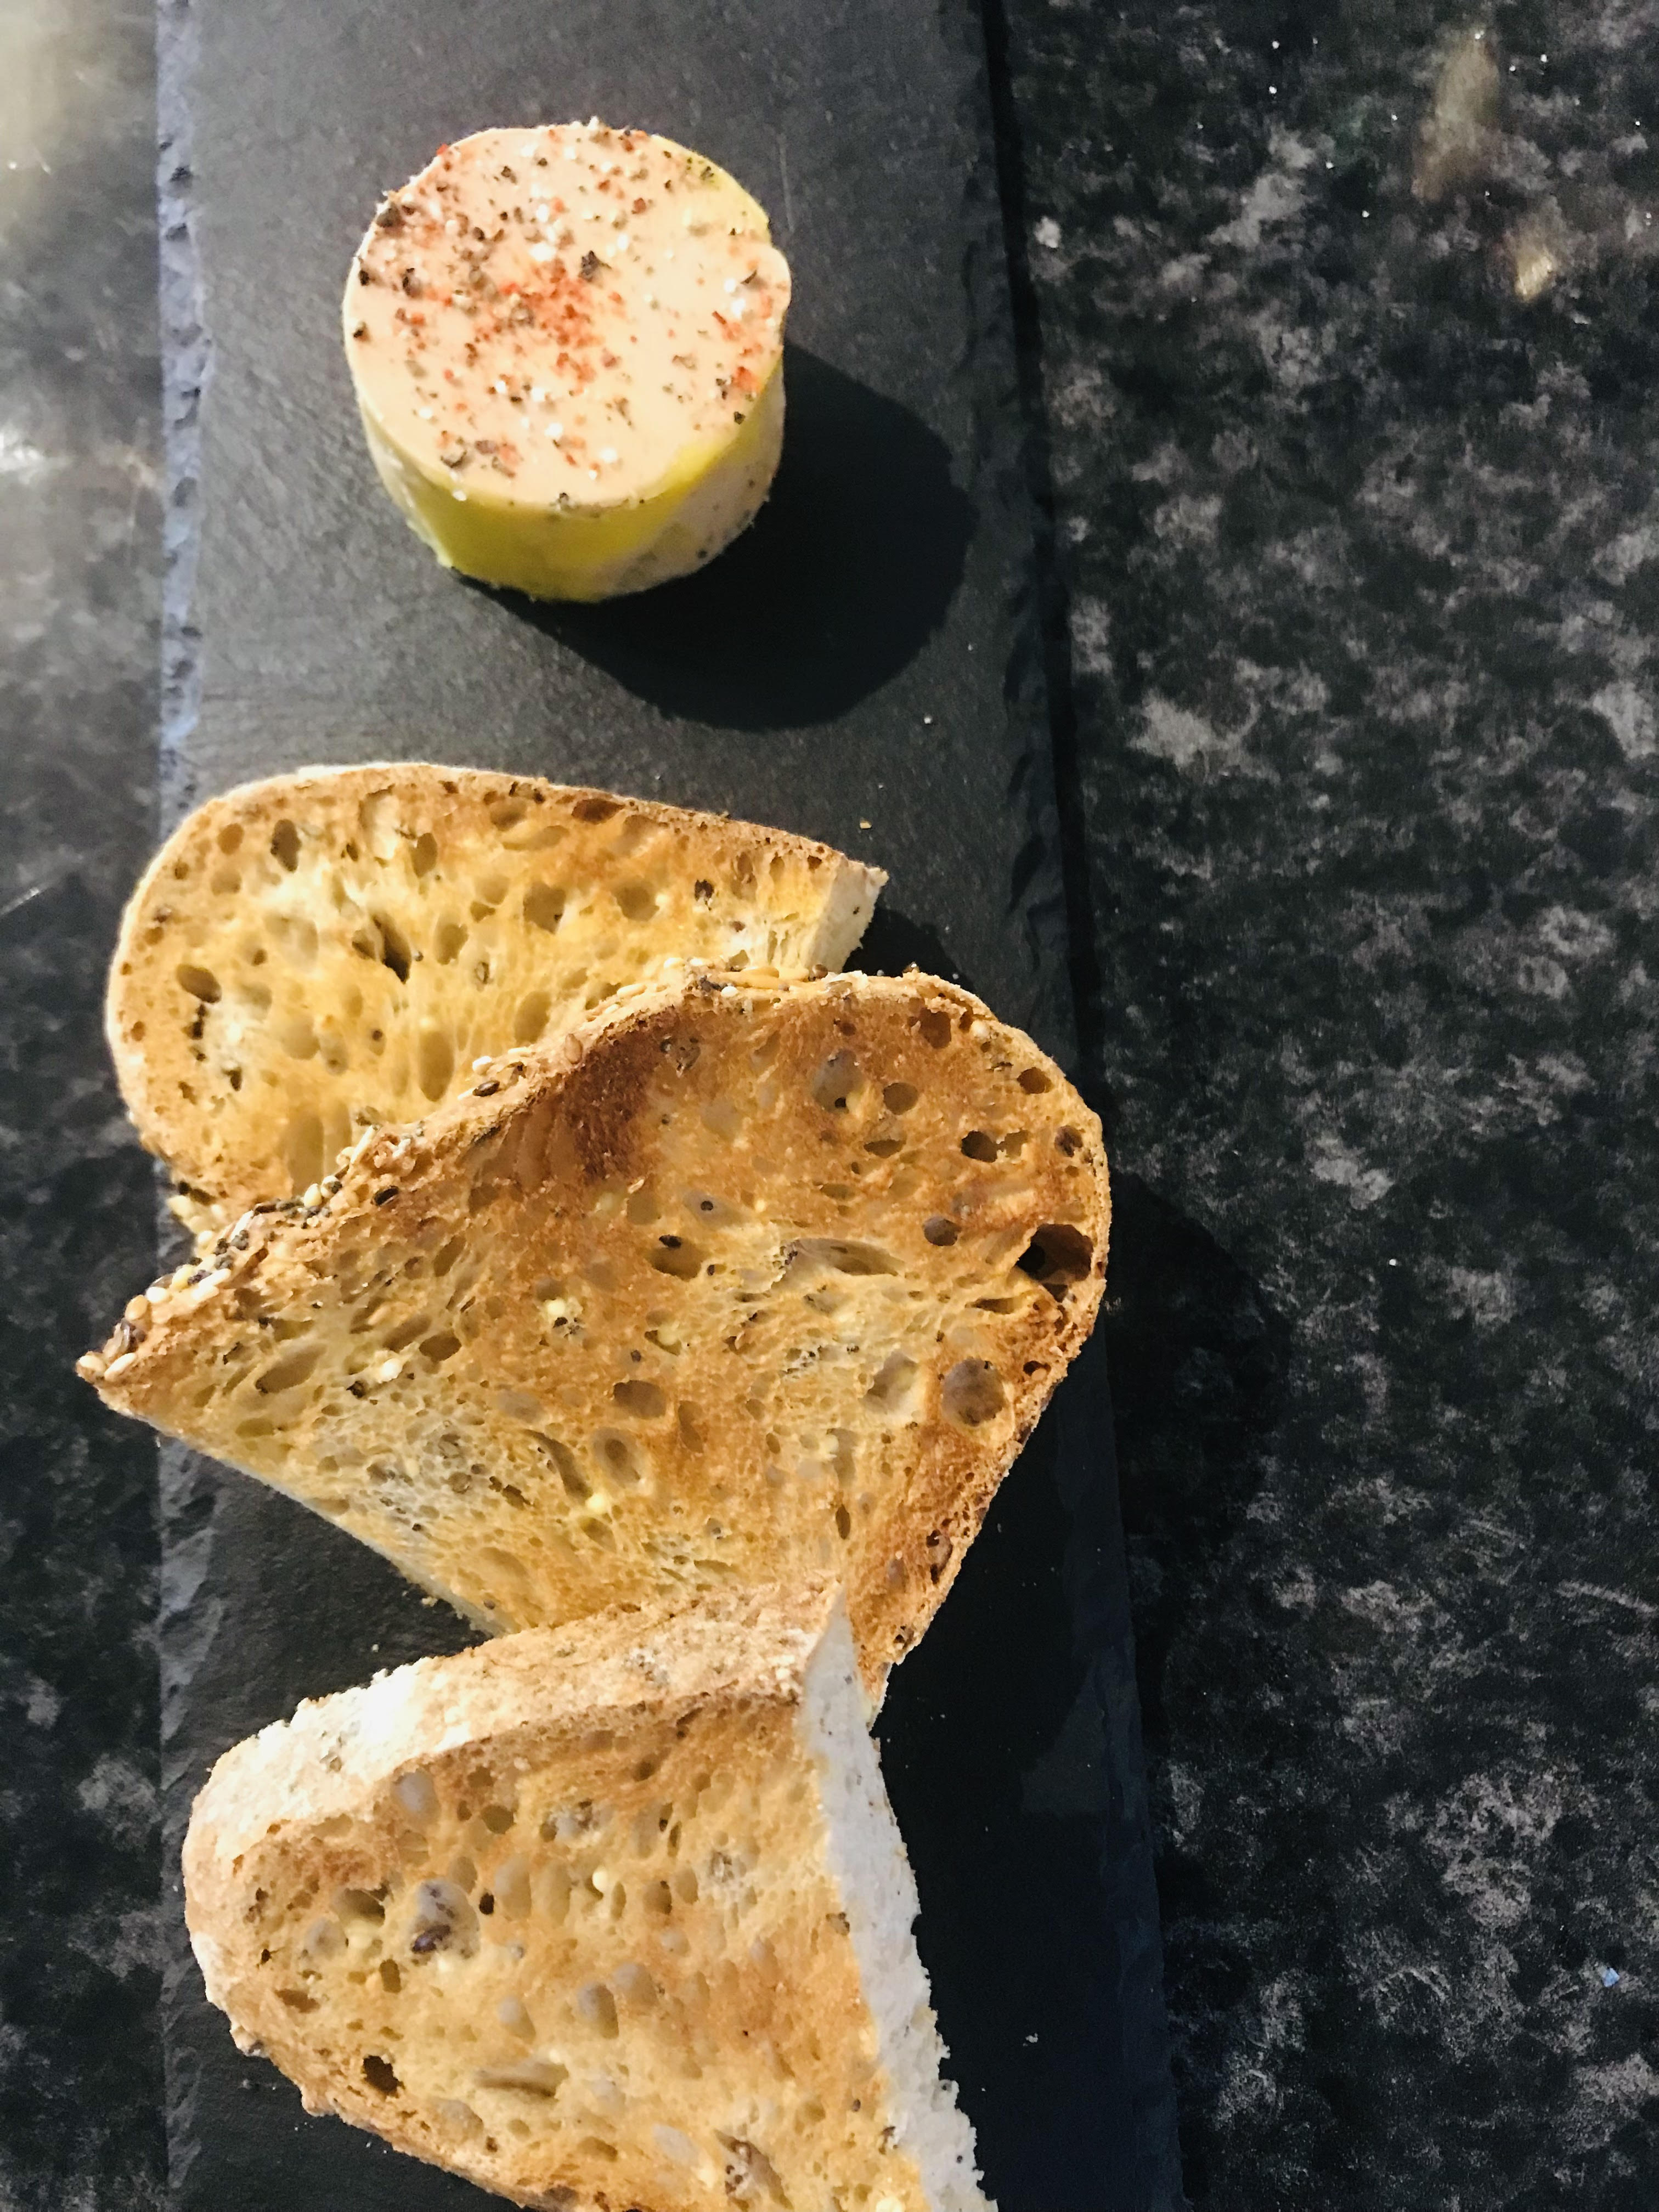 Foie gras de canard du Sud-Ouest fait maison (50gr), pain de campagne grillé